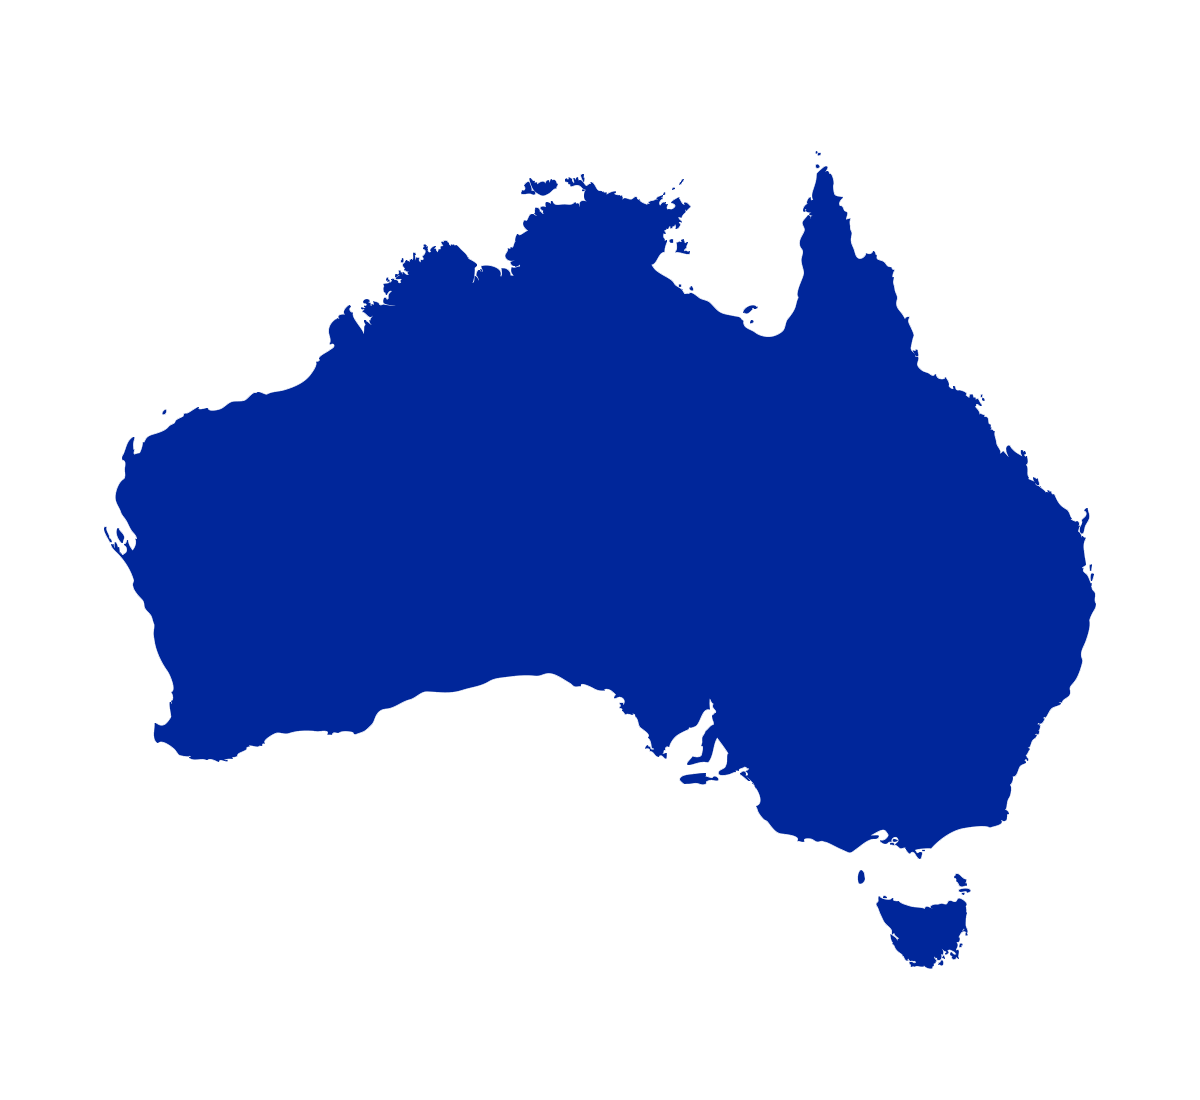 outline of Australia in blue